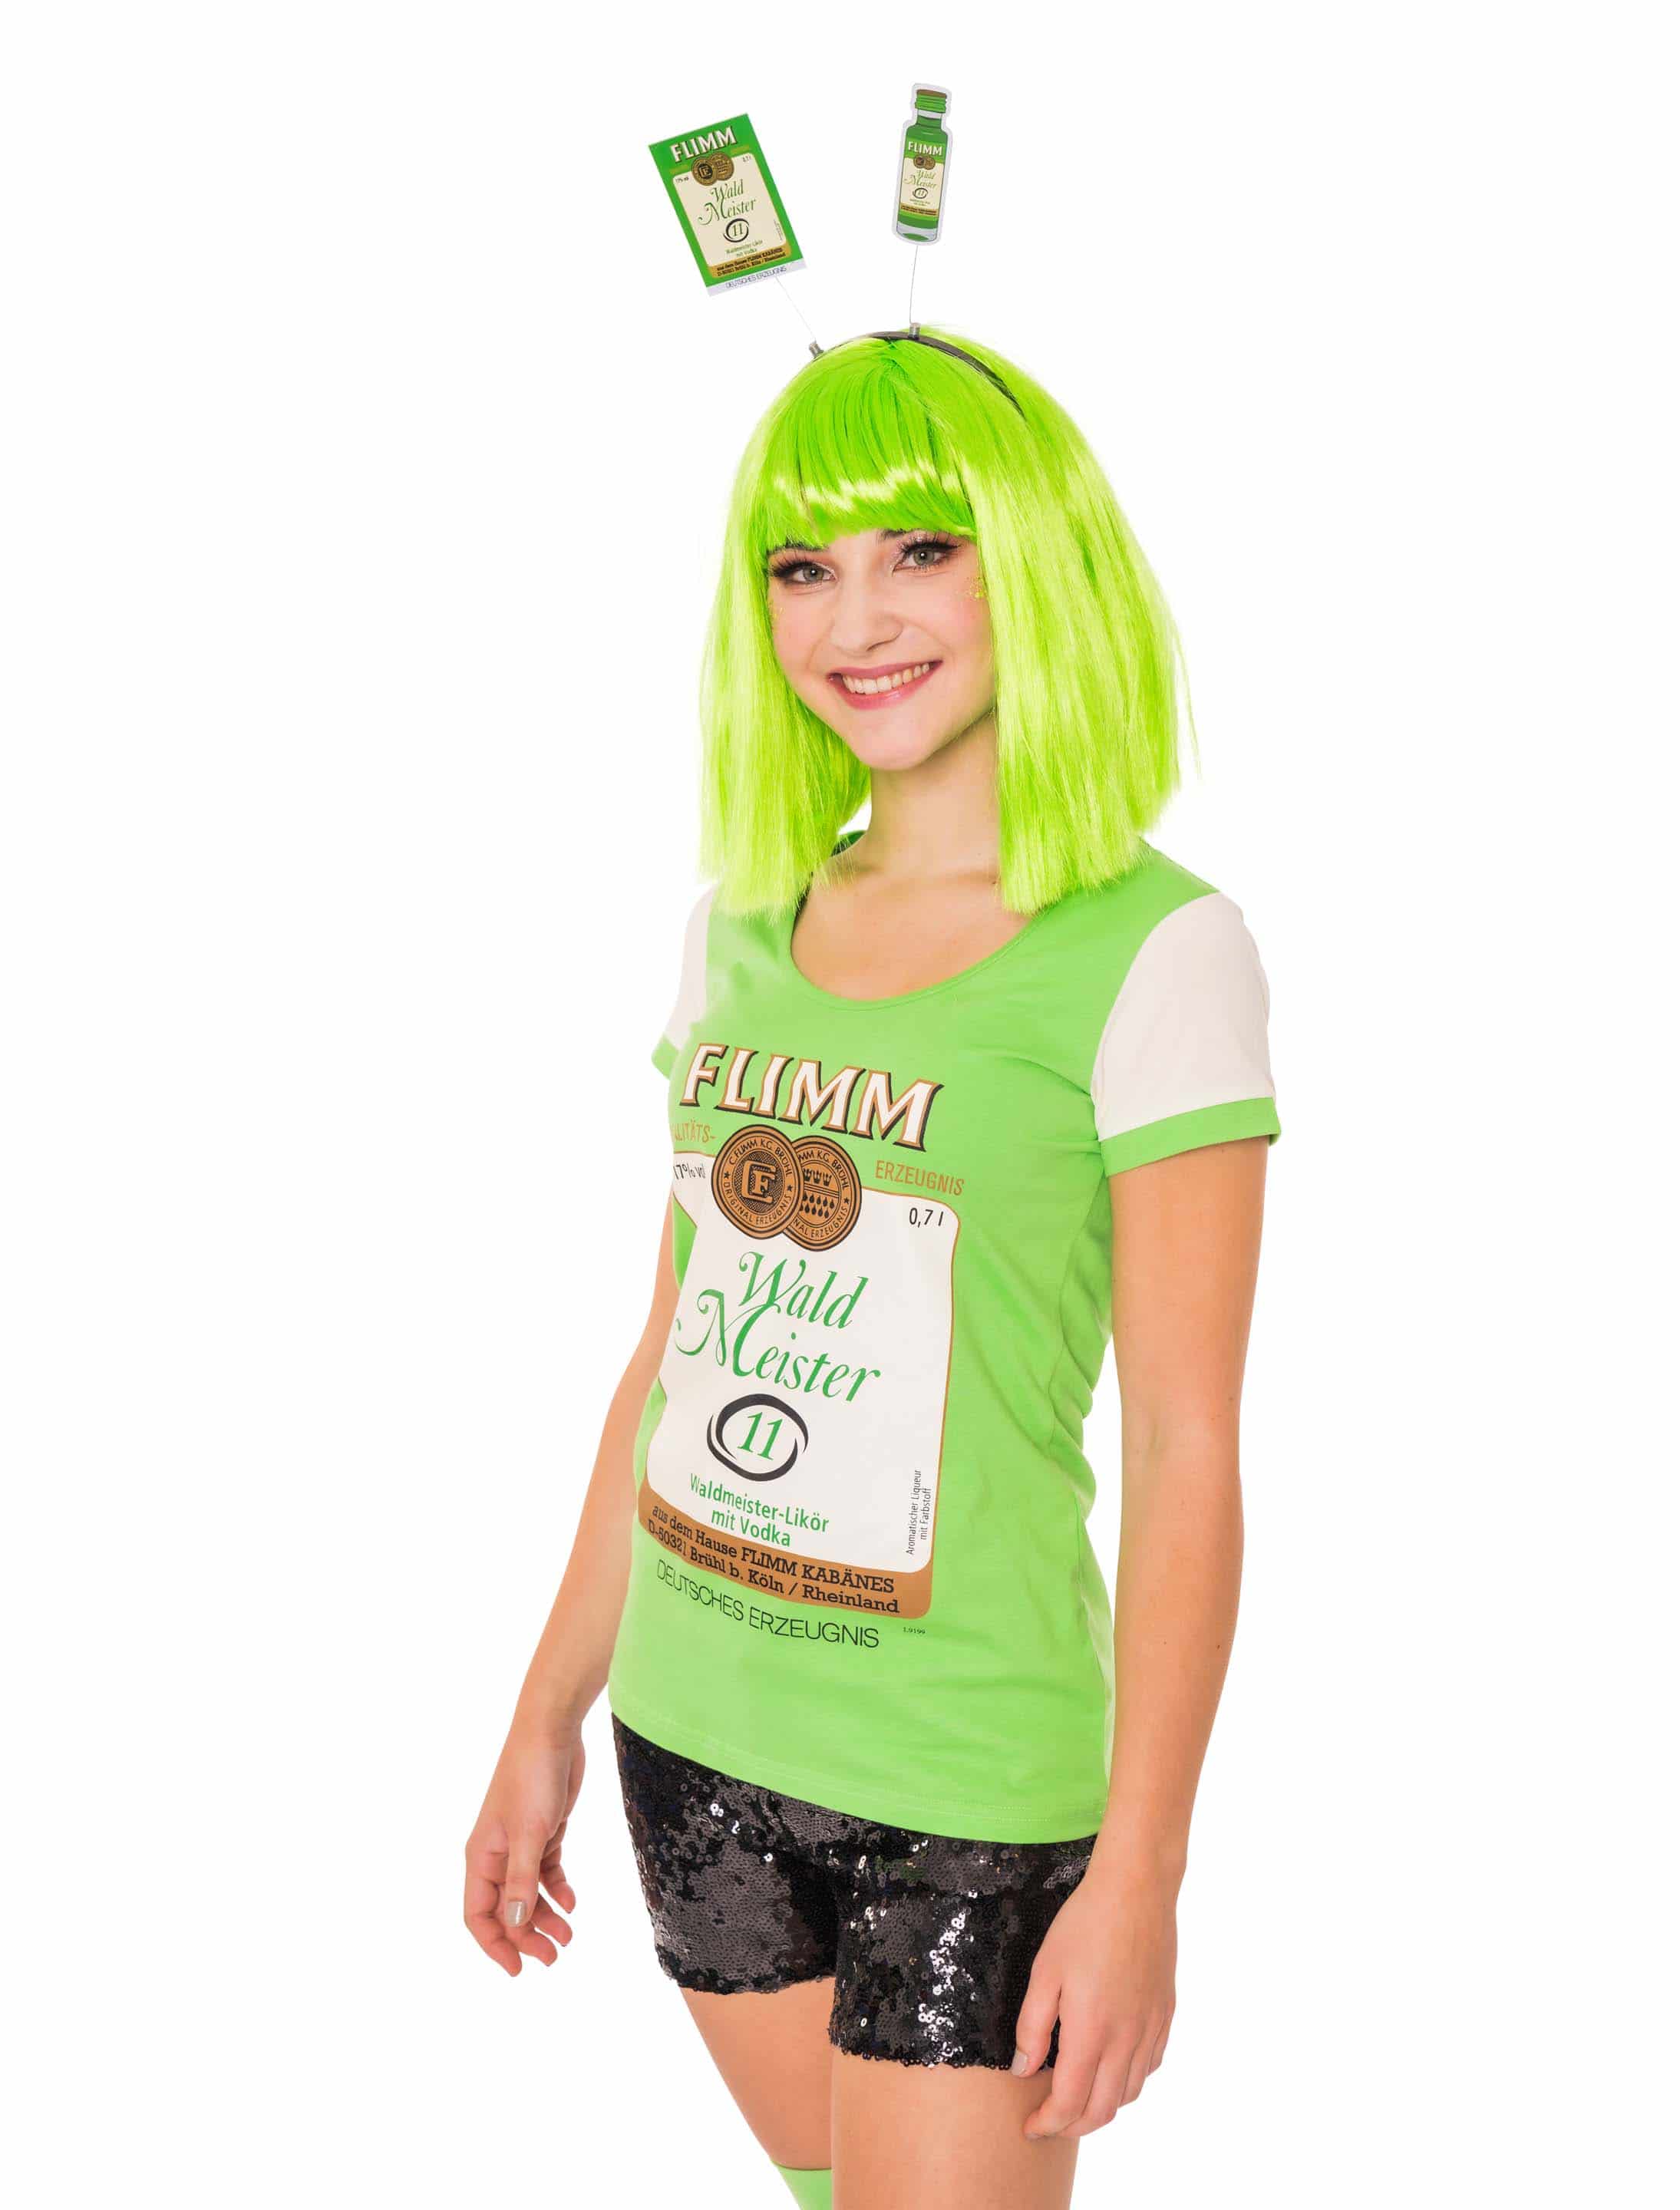 T-Shirt FLIMM Damen Damen grün M